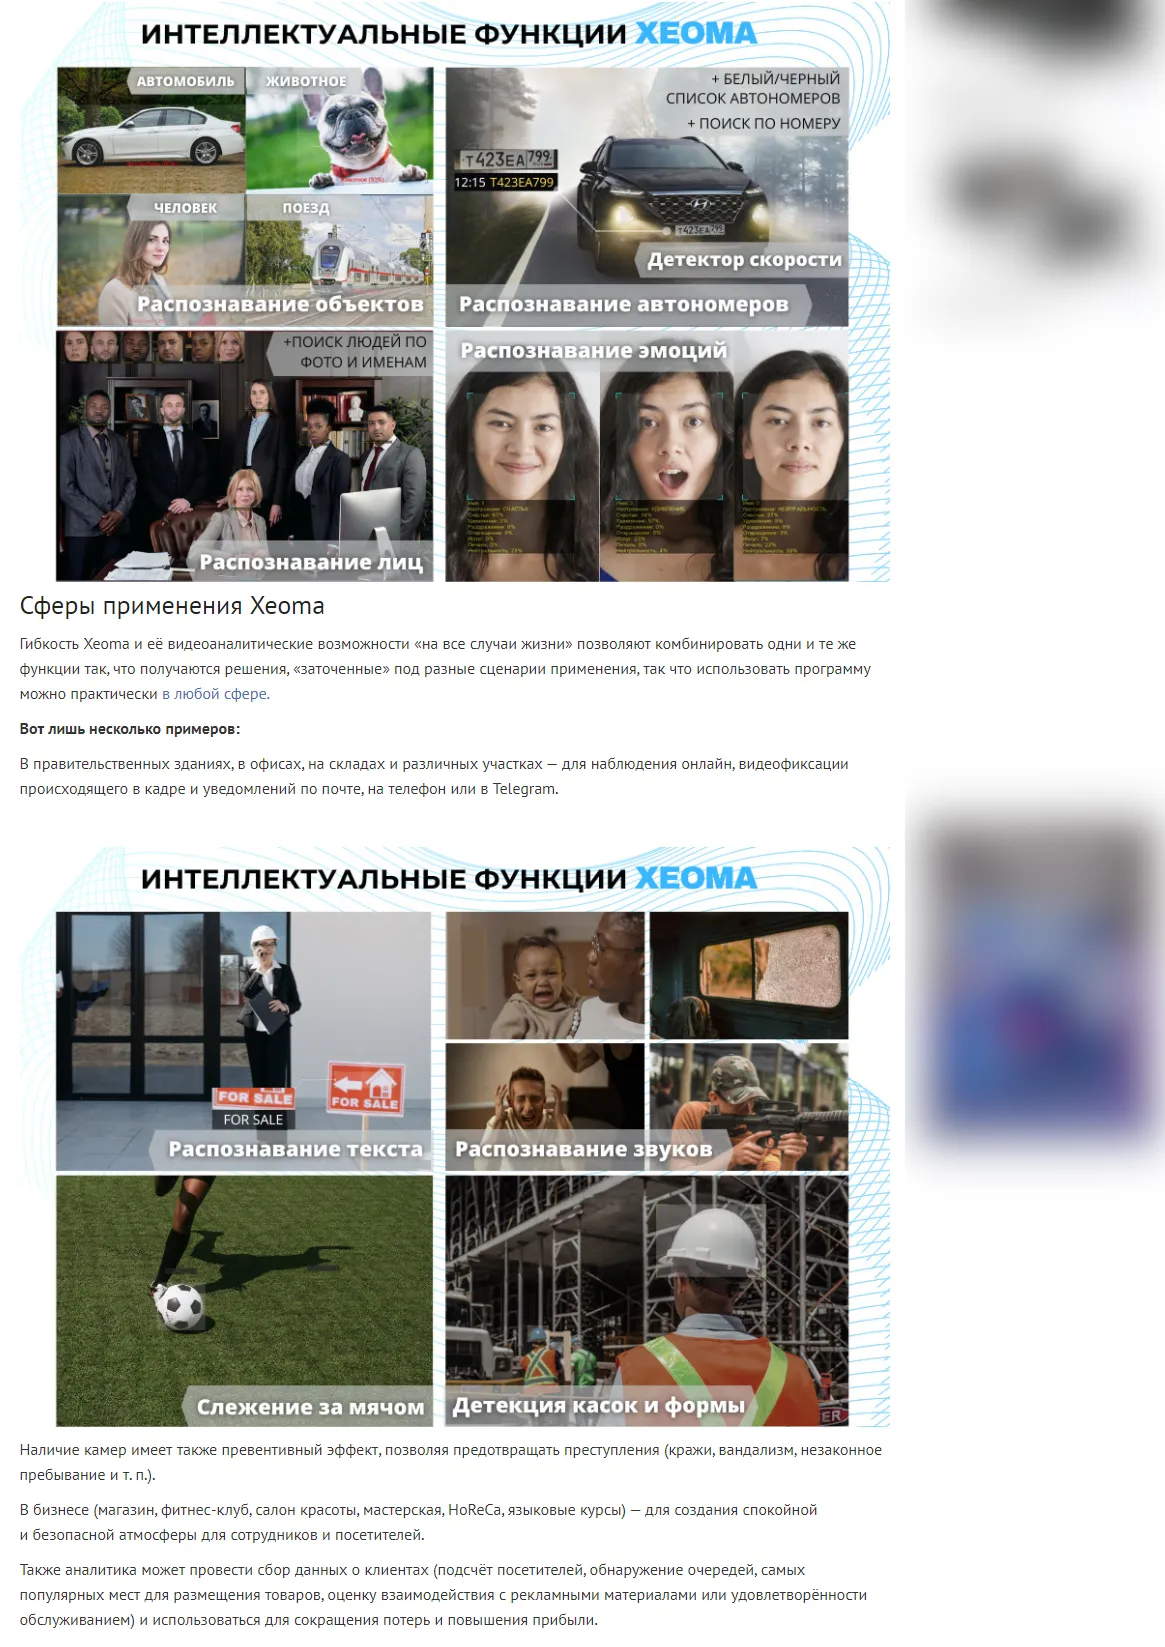 Статья о программе видеонаблюдения Xeoma на портале Новый Калининград. Распознавание лиц и автономеров